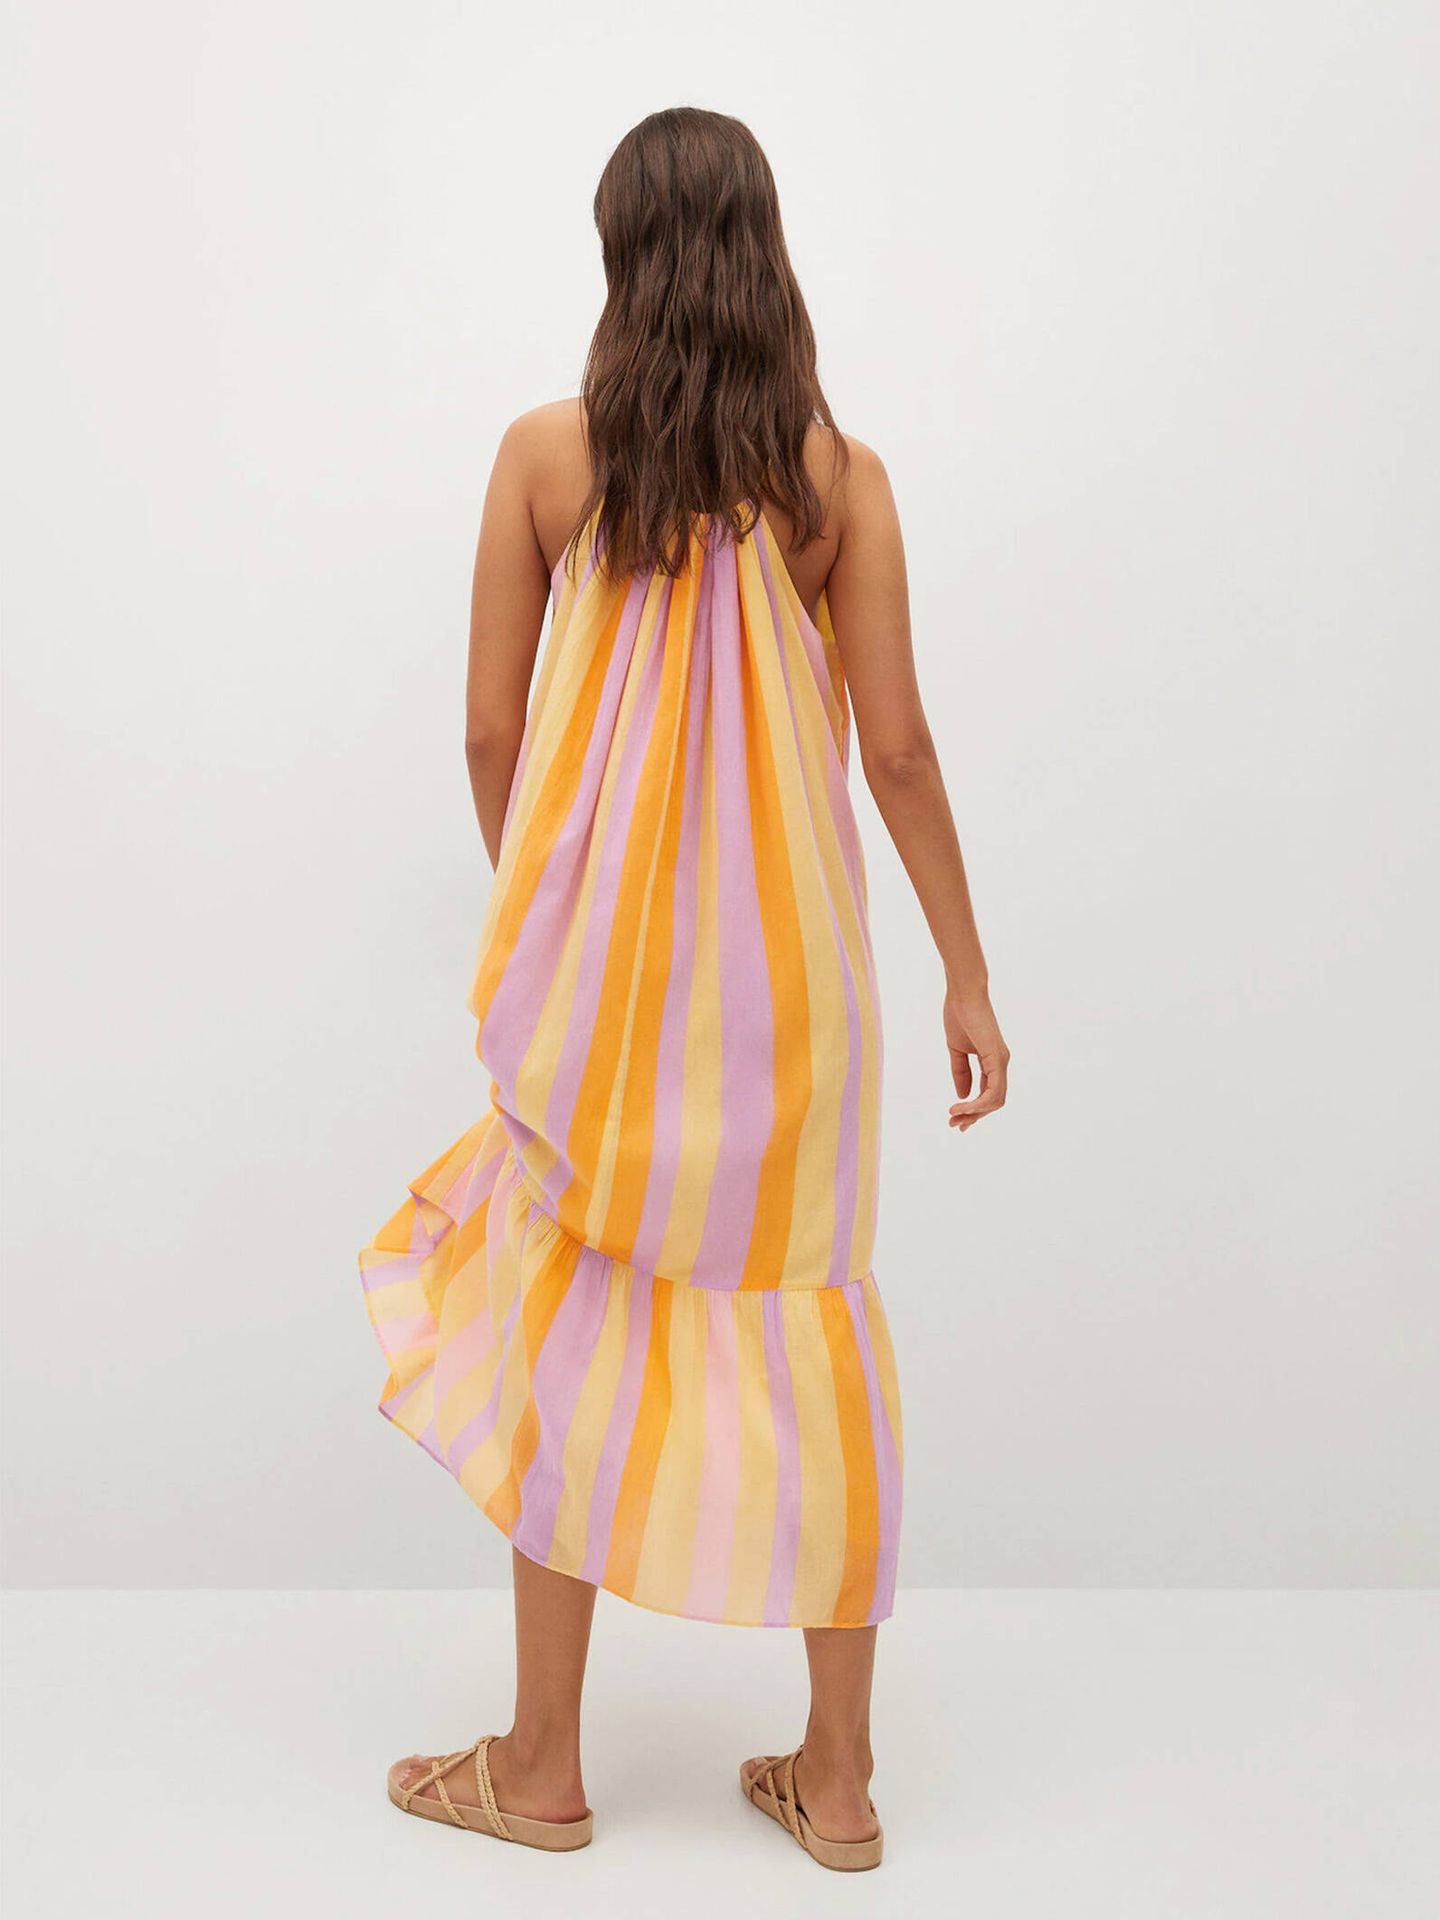 El vestido multicolor que arrasa en ventas de Mango. (Cortesía)